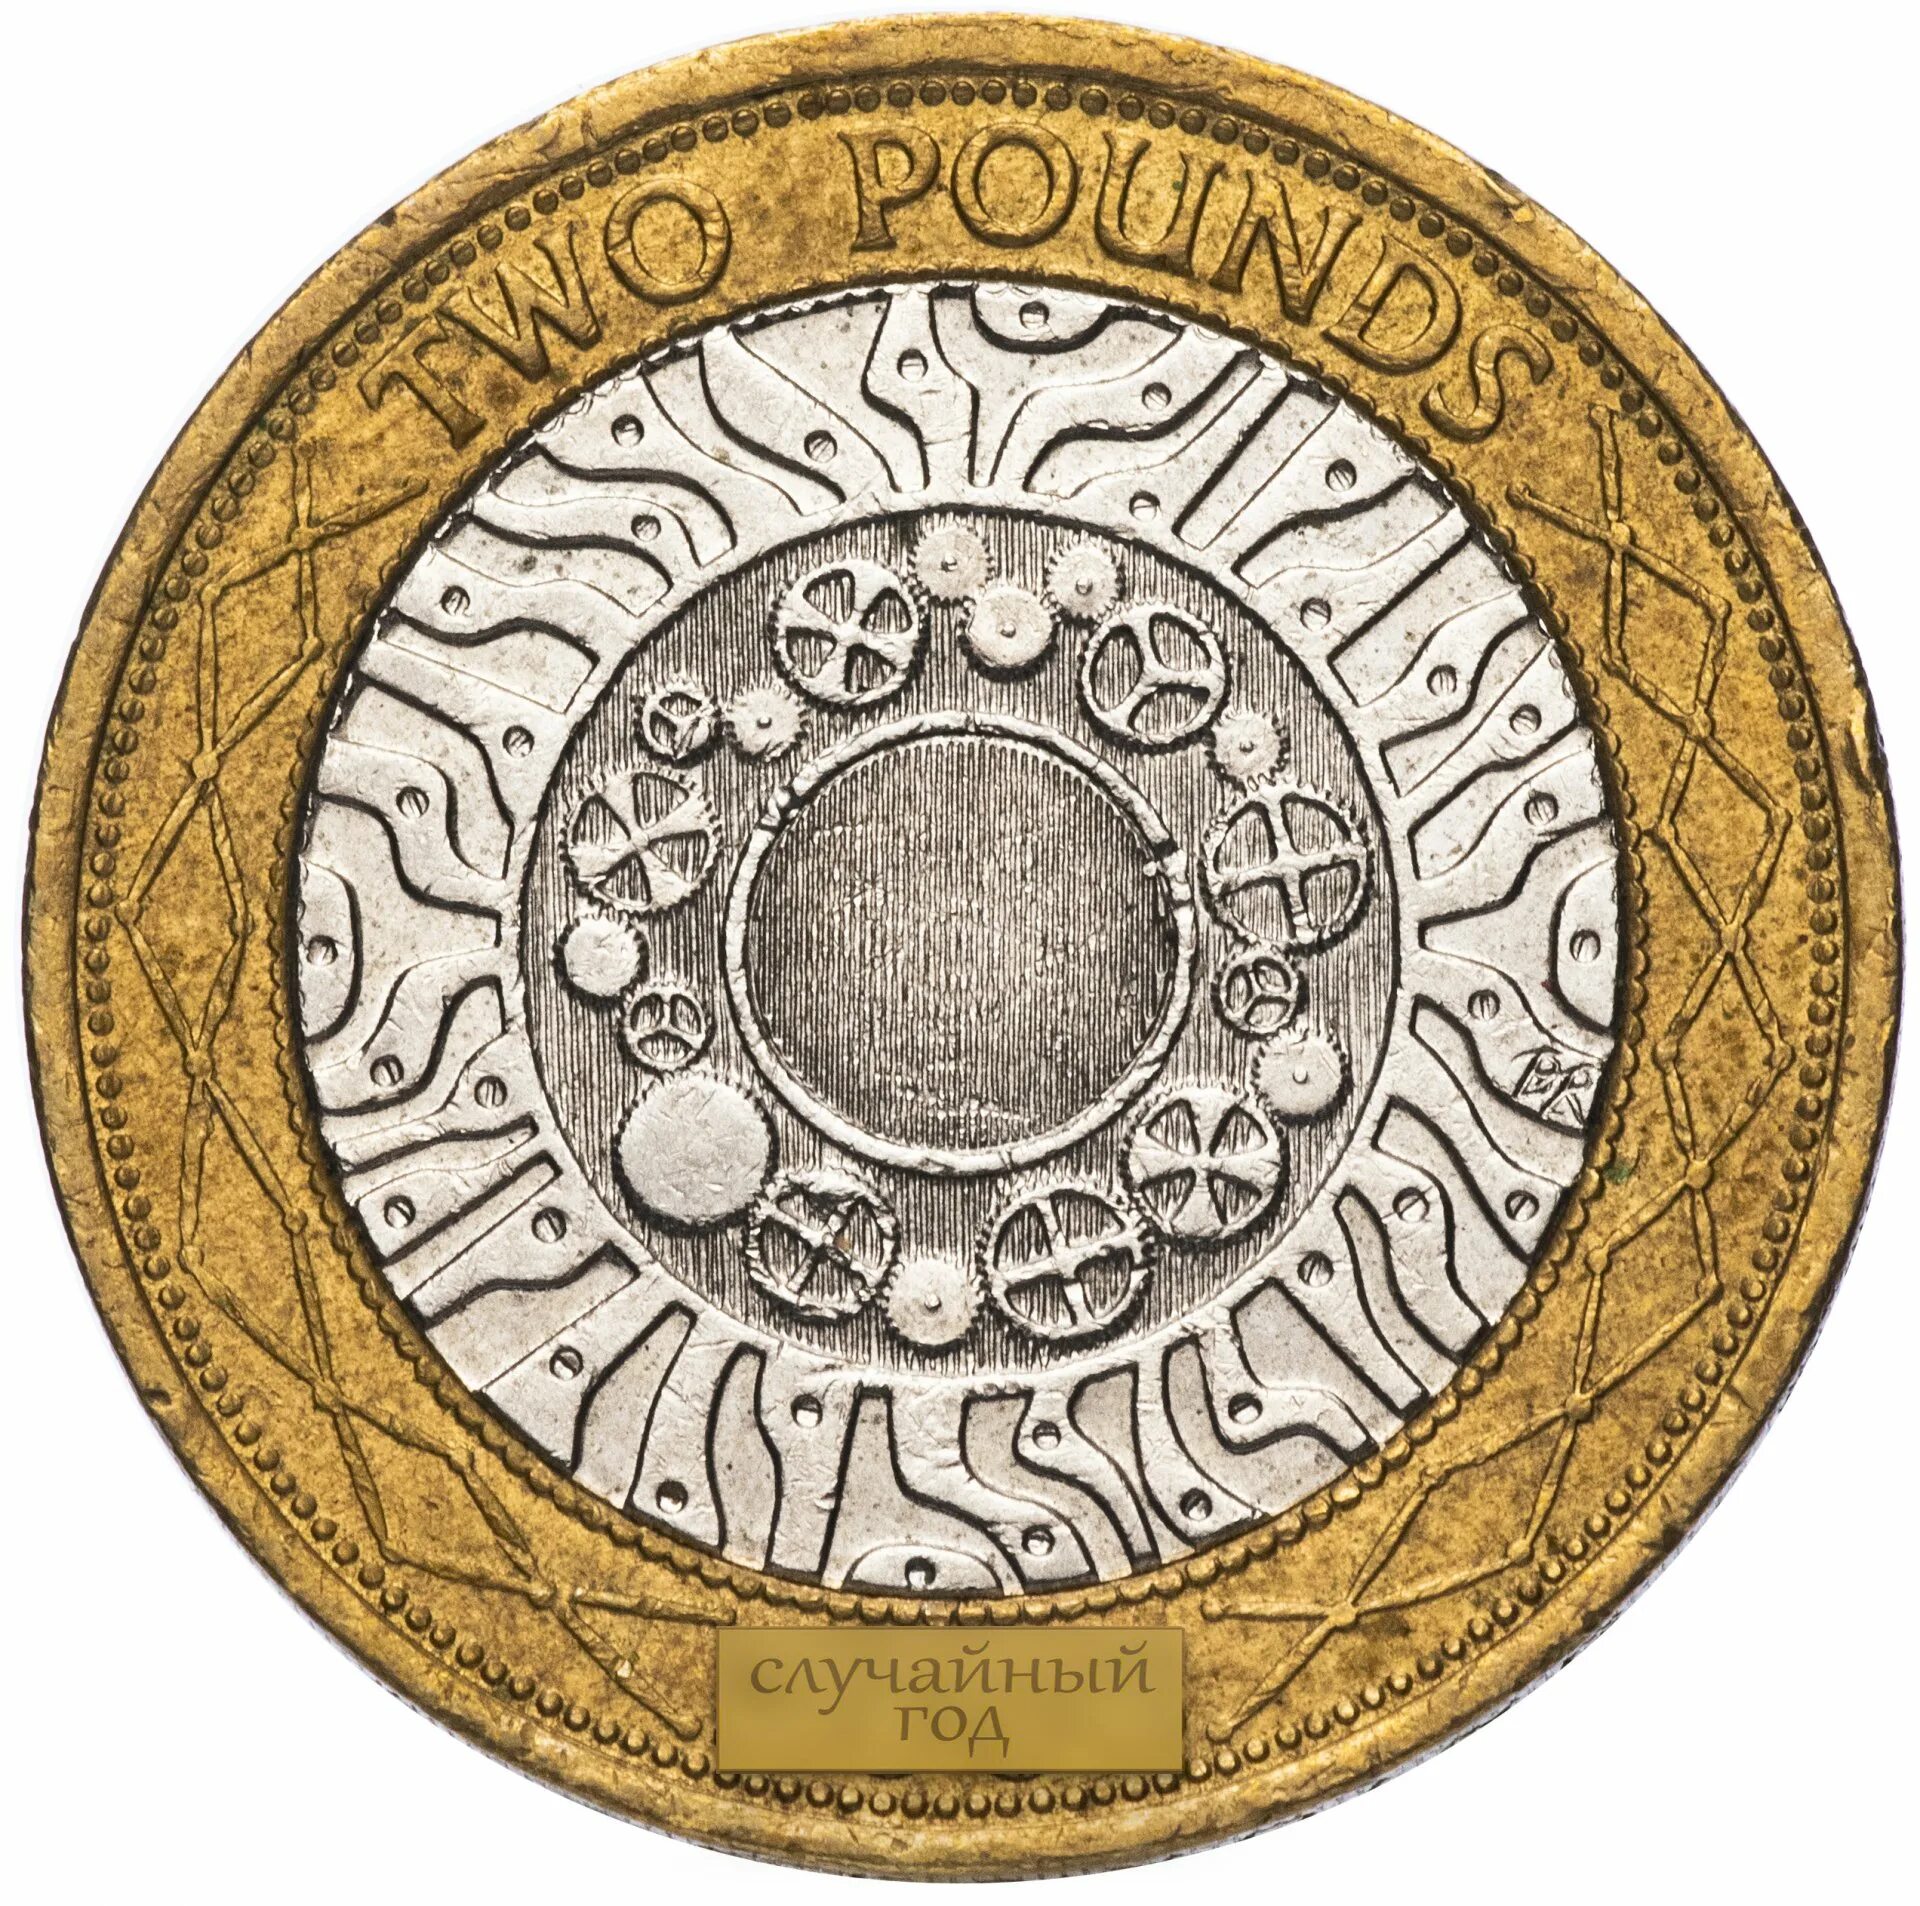 2 Фунта монета. 2 Фунта Великобритания. Elizabeth || 1998 монета. Монета 2 фунта Великобритания 2015 год. Two coins